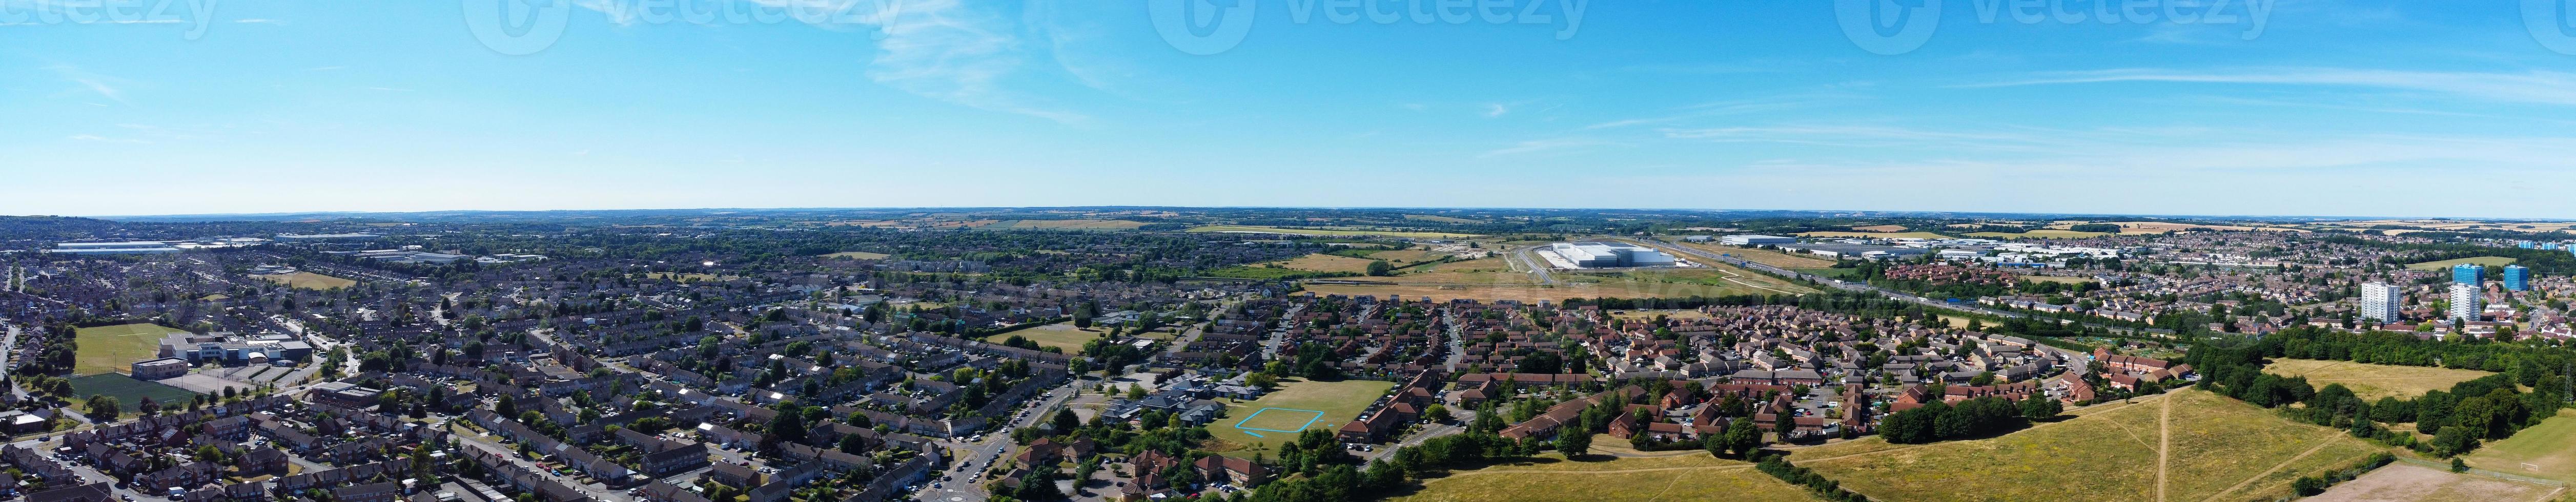 images en grand angle et vue panoramique sur le paysage aérien de l'angleterre grande bretagne photo